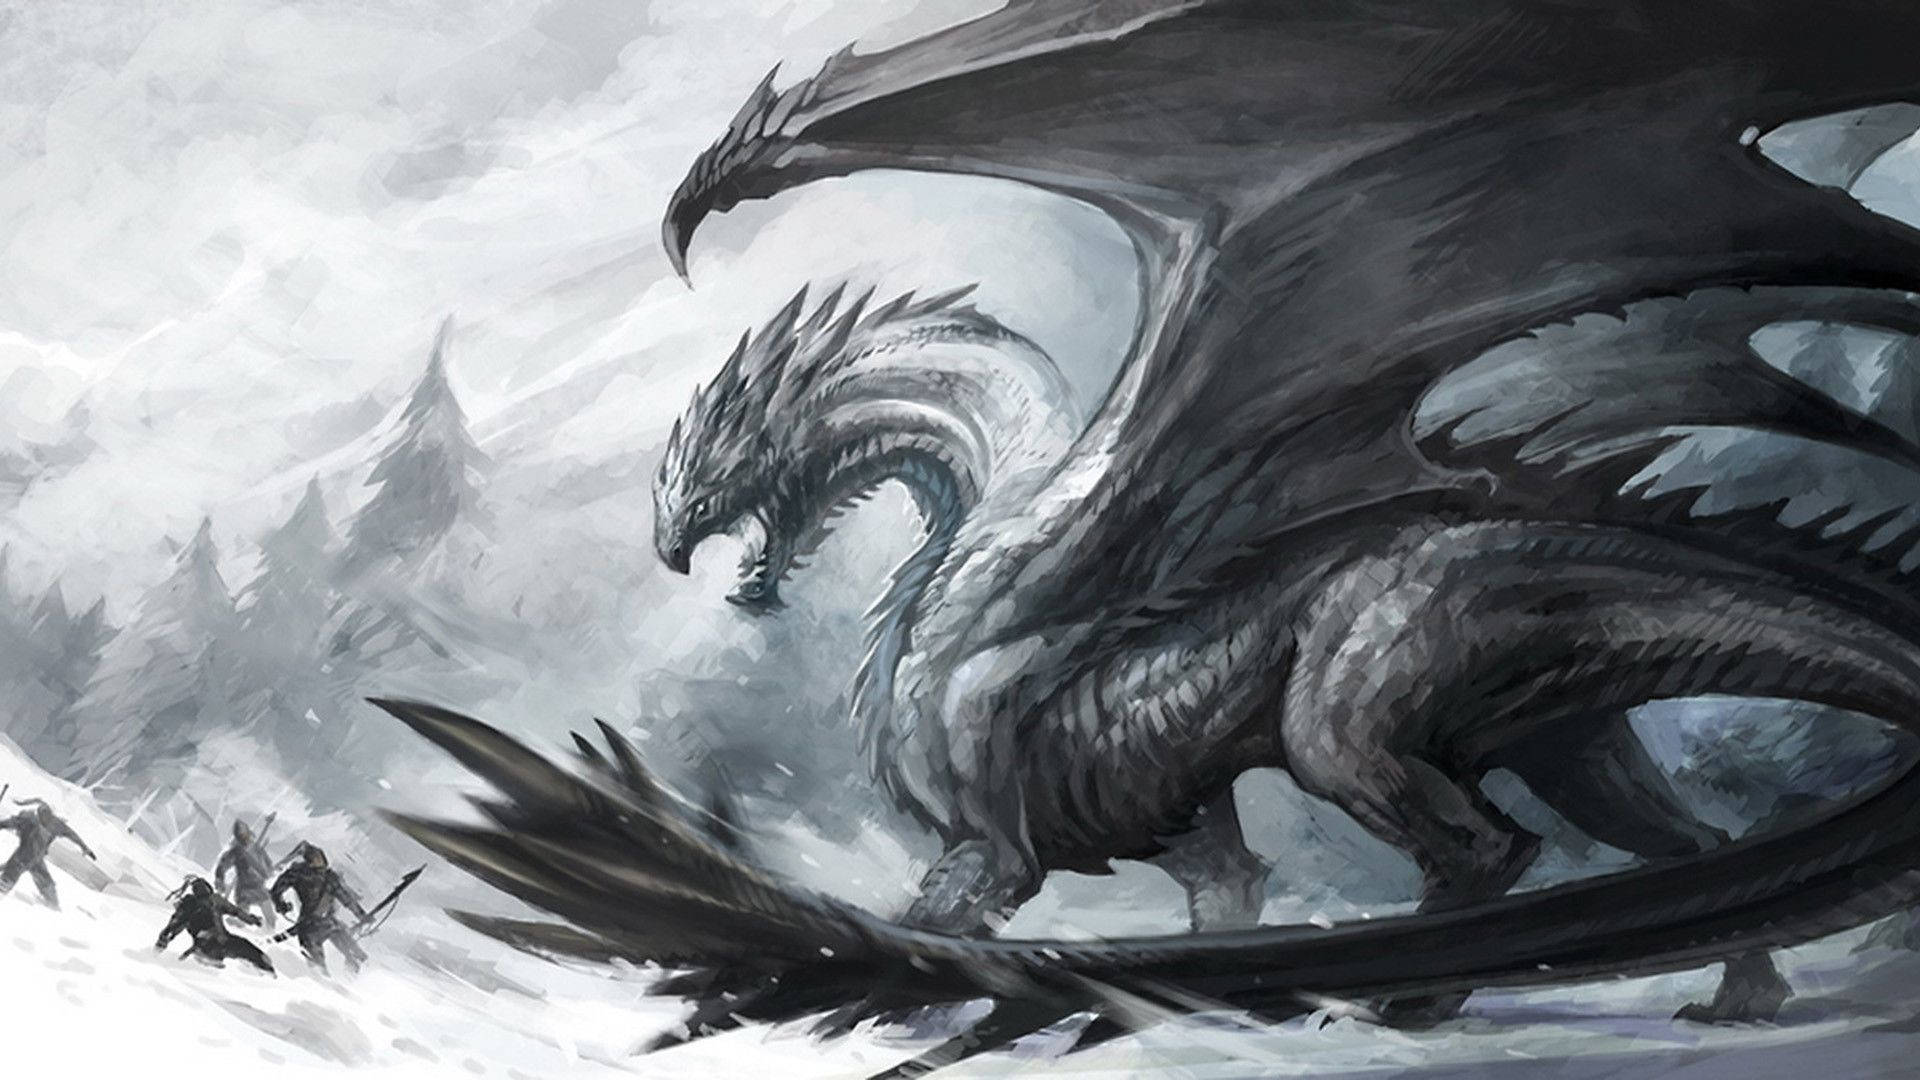 Hd Dragon Blizzard Wallpaper